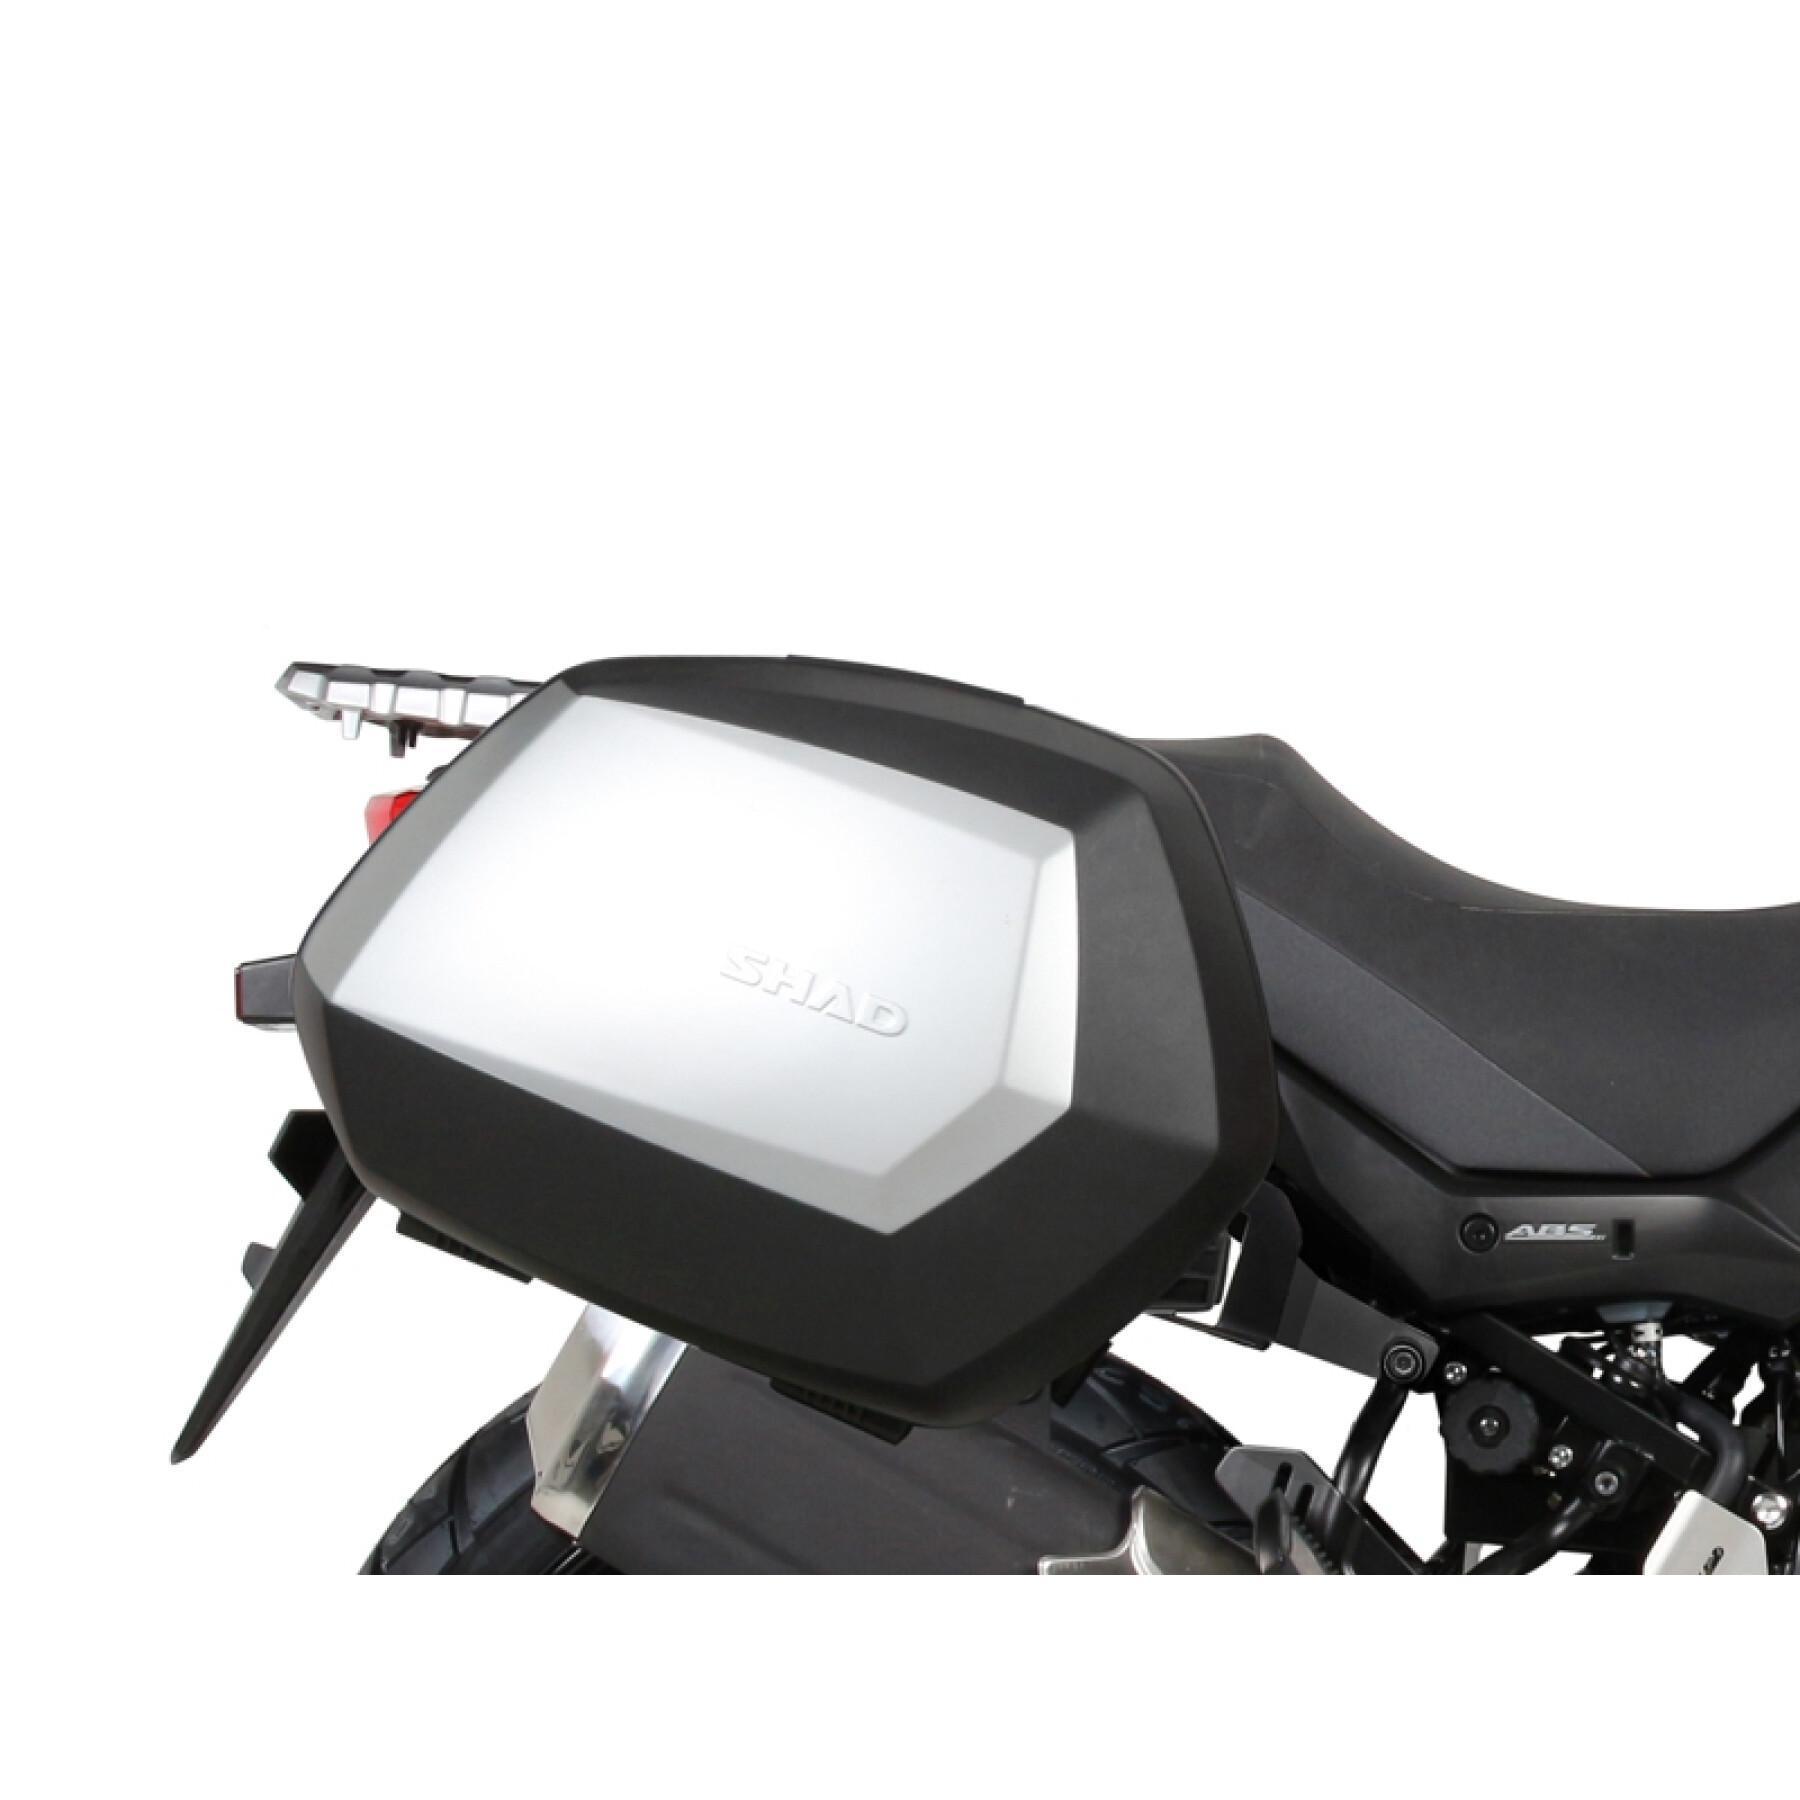 Supporto valigie laterali moto Shad 3P System Suzuki V-Strom 650 2017-2020